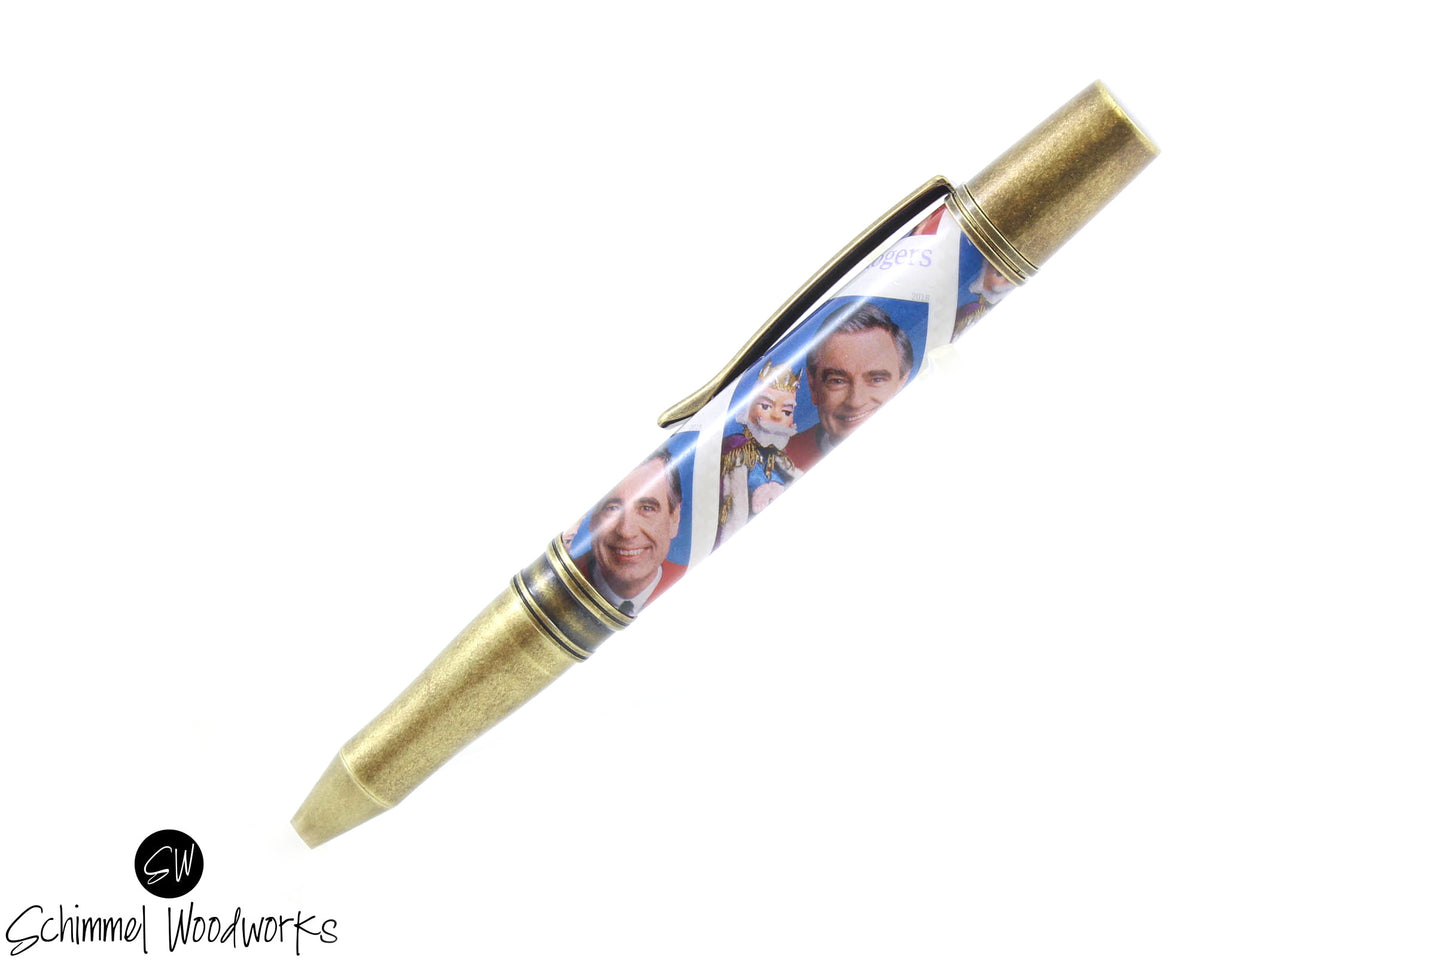 Mister Rogers Pen